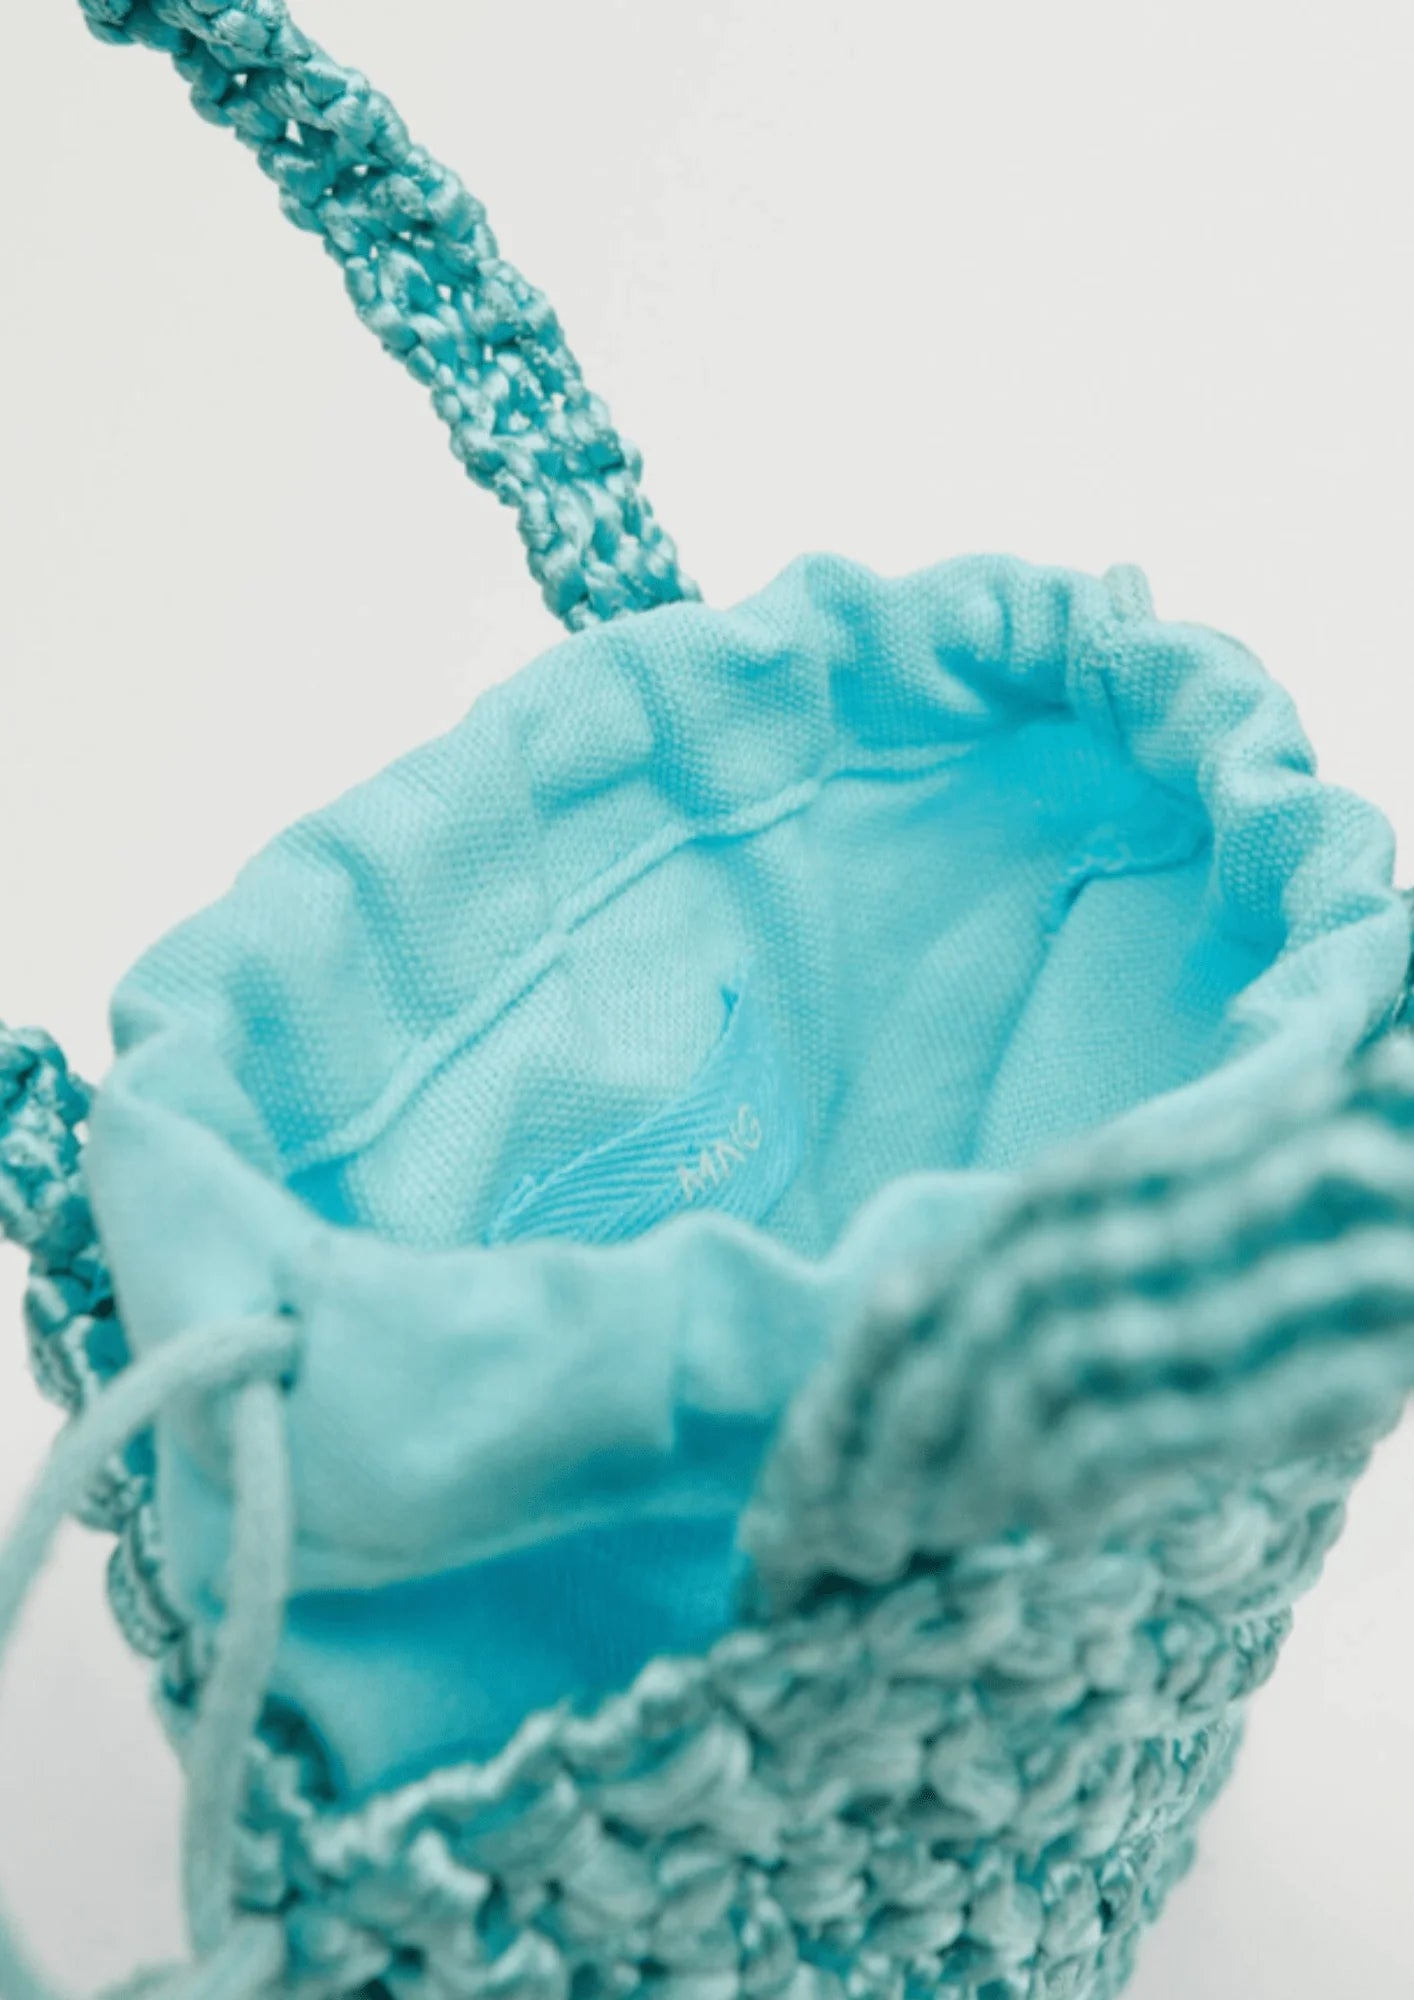 Mini de sac à main au crochet turquoise